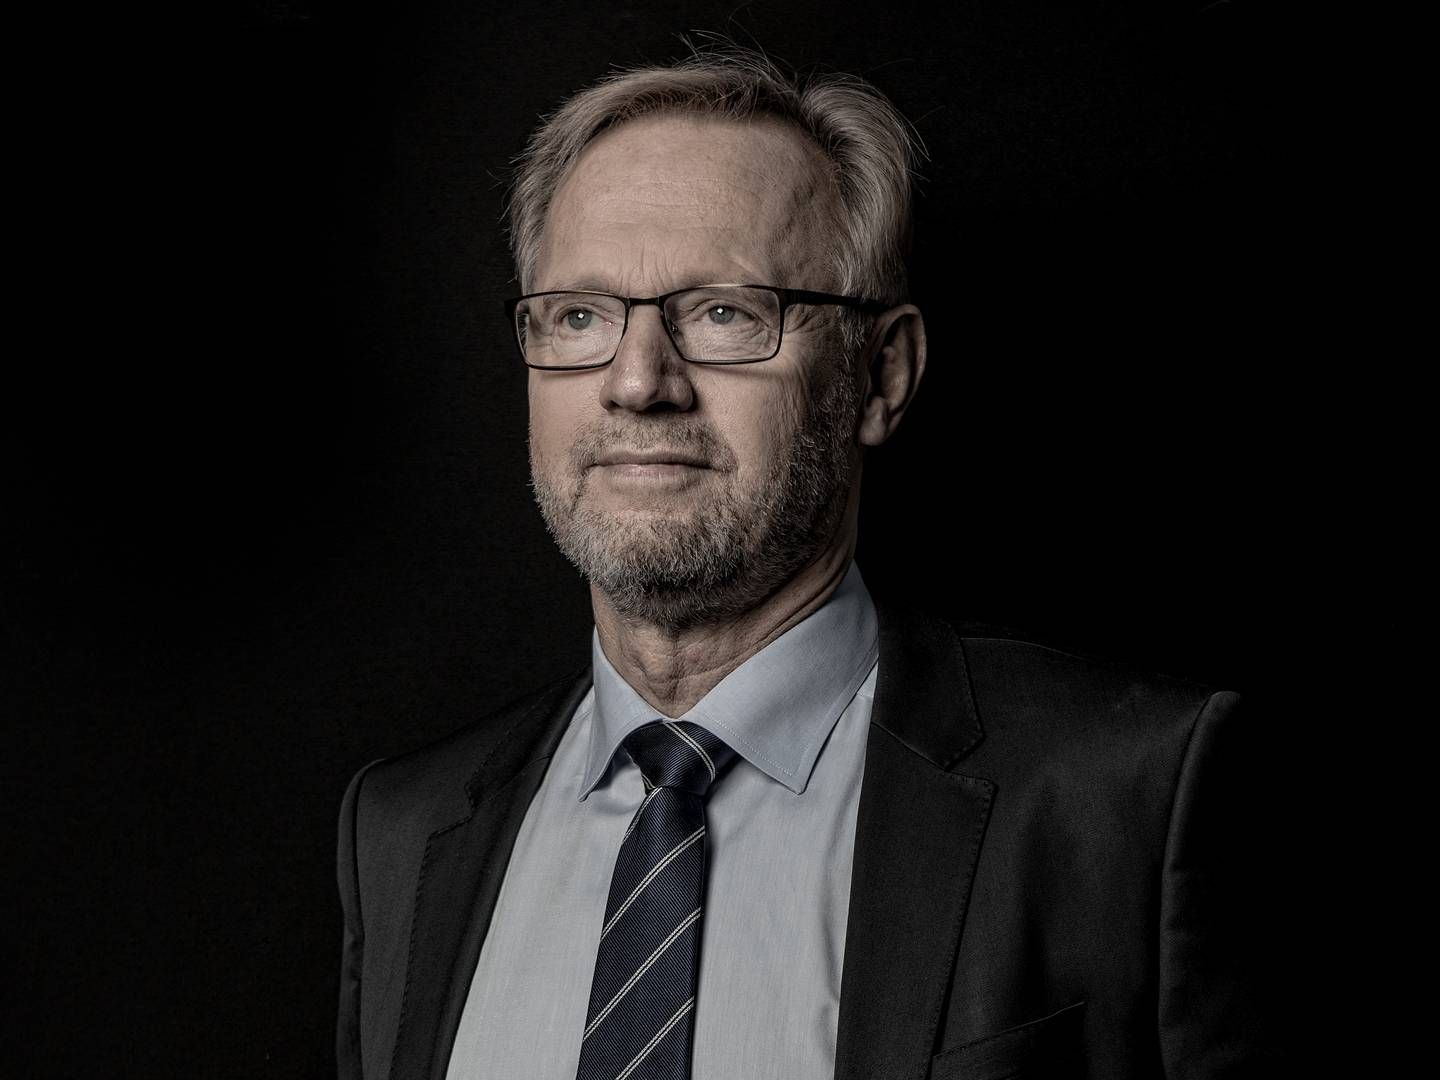 Finanssektorens gadedreng har stået i spidsen for Jyske Bank i 25 år. Og det fortsætter han med - lidt endnu. | Foto: Casper Dalhoff/ERH